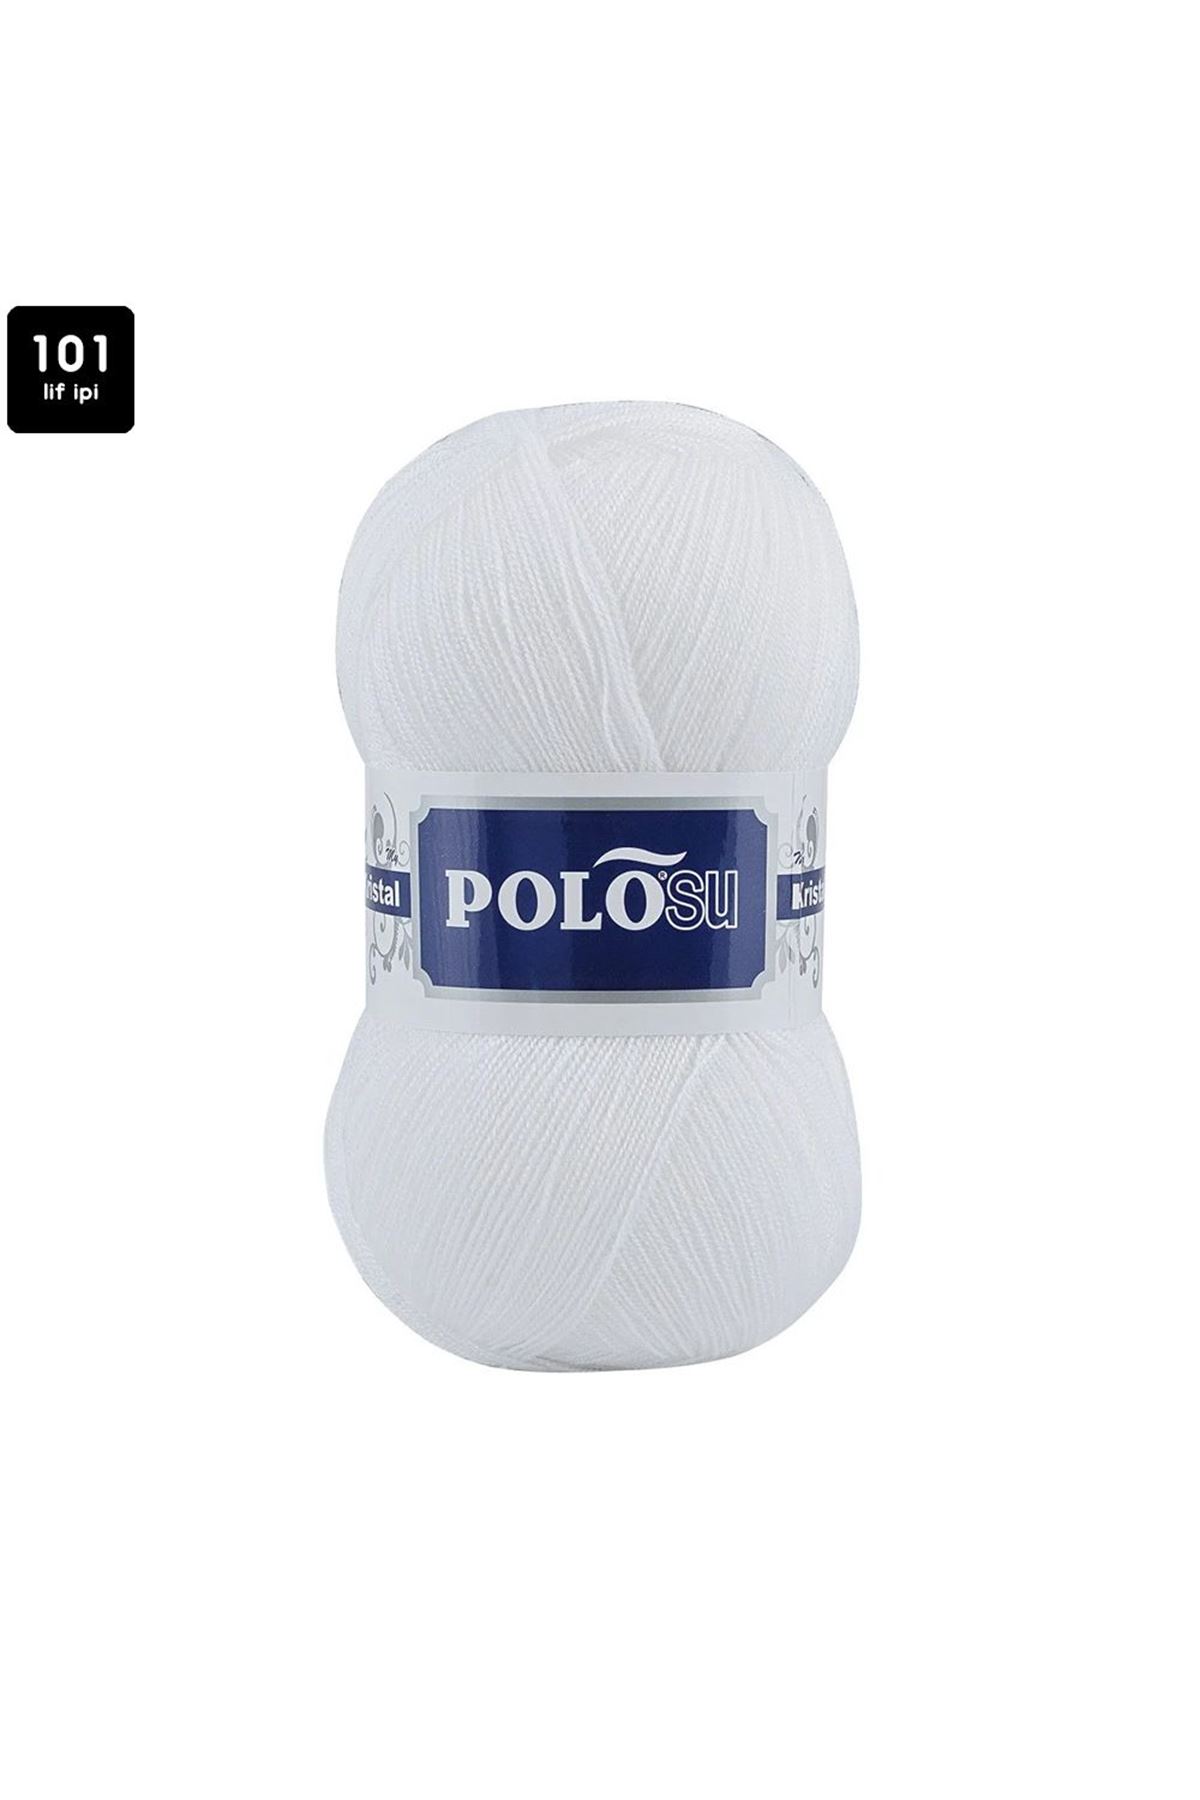 PoloSU My Kristal Renk No:101